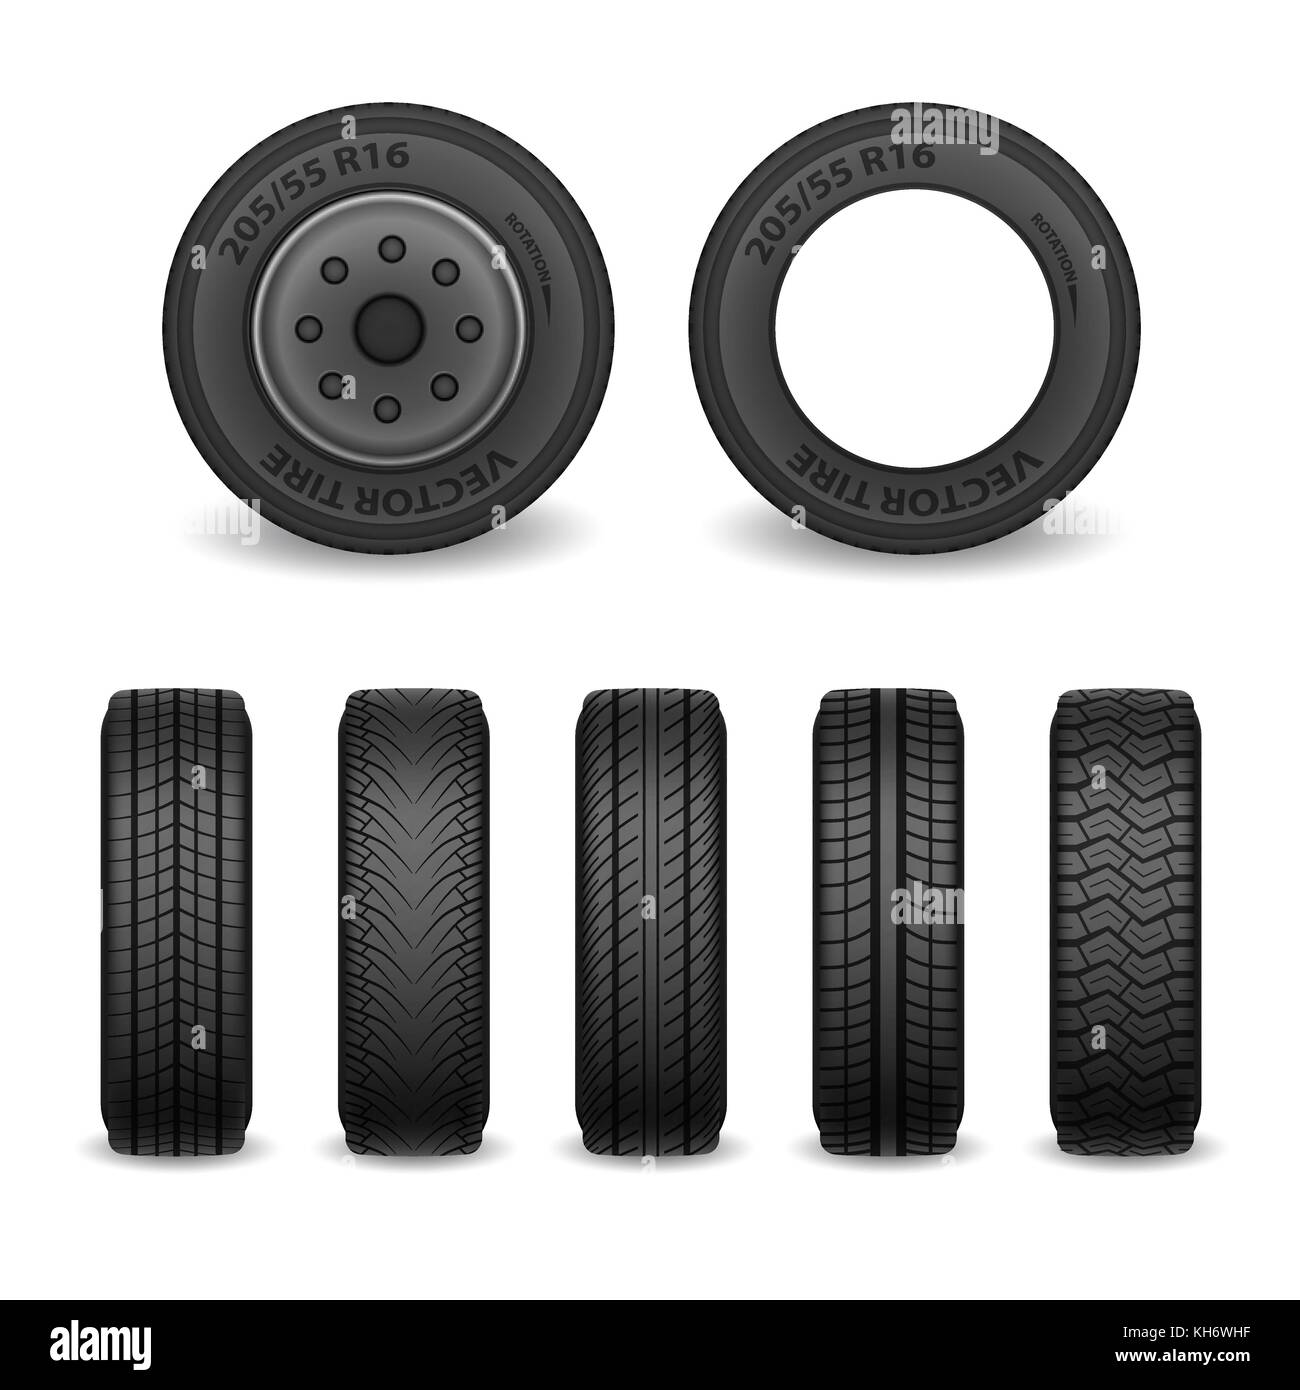 Realistische Vektor reifen. PKW-Reifen mit unterschiedlichen Marken treten. Vektor Räder Stock Vektor